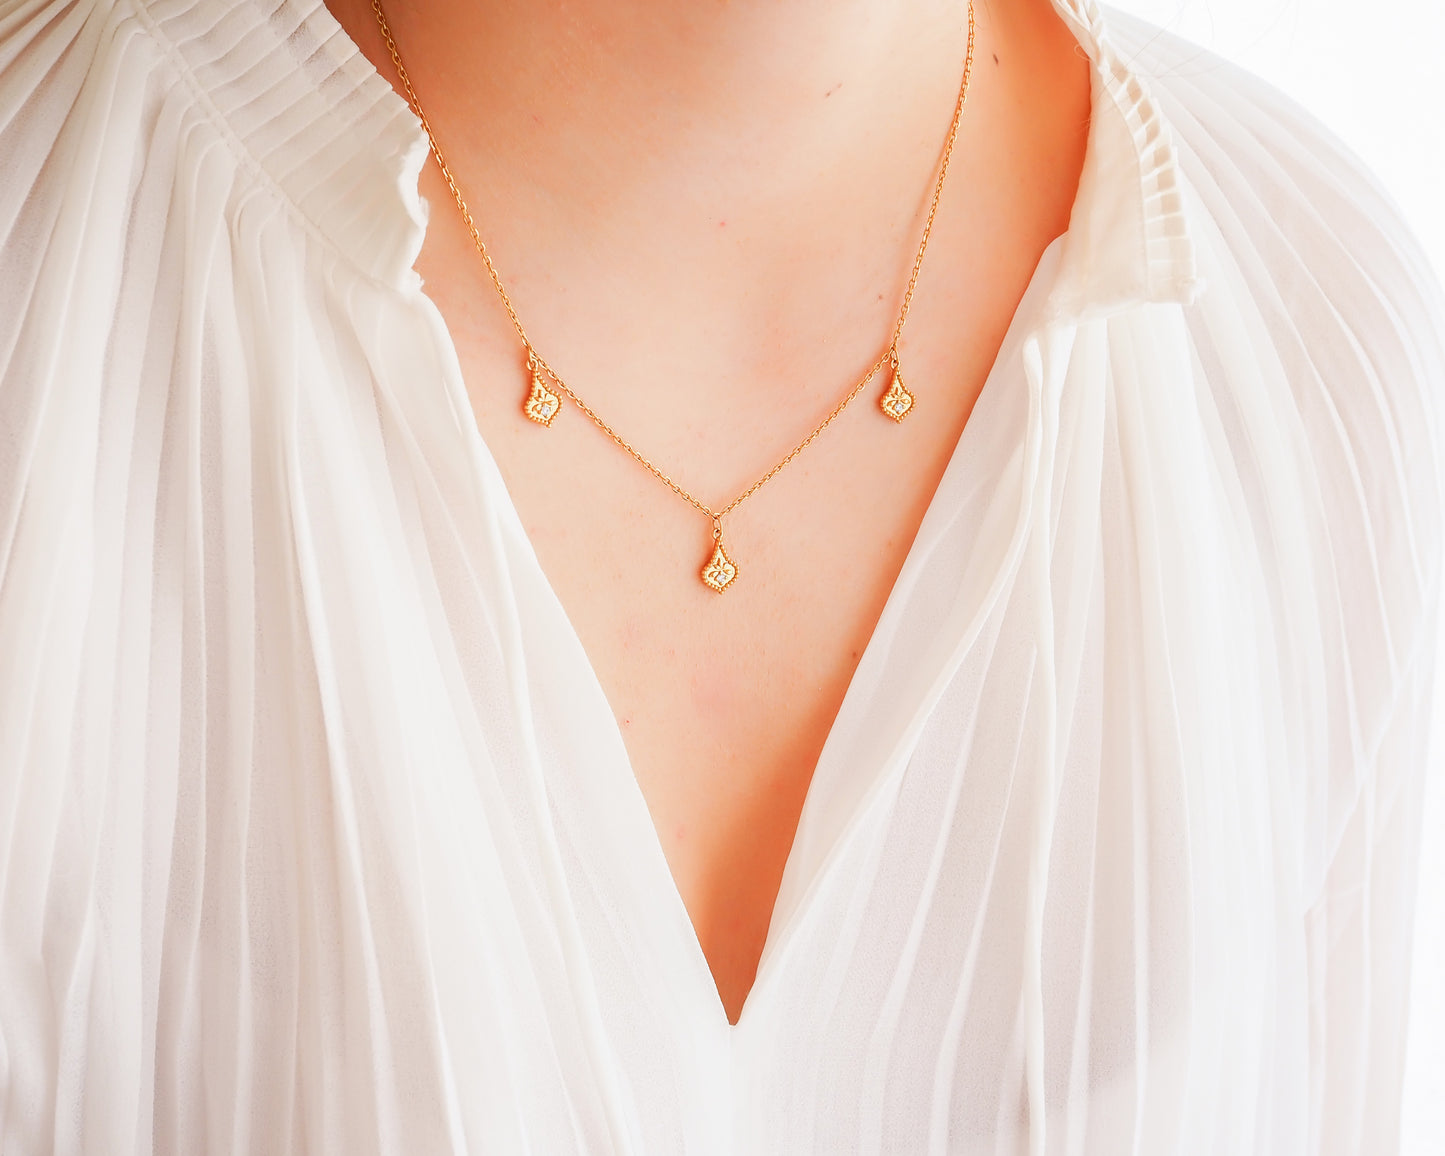 VENICE necklace 18K gold Vermeil